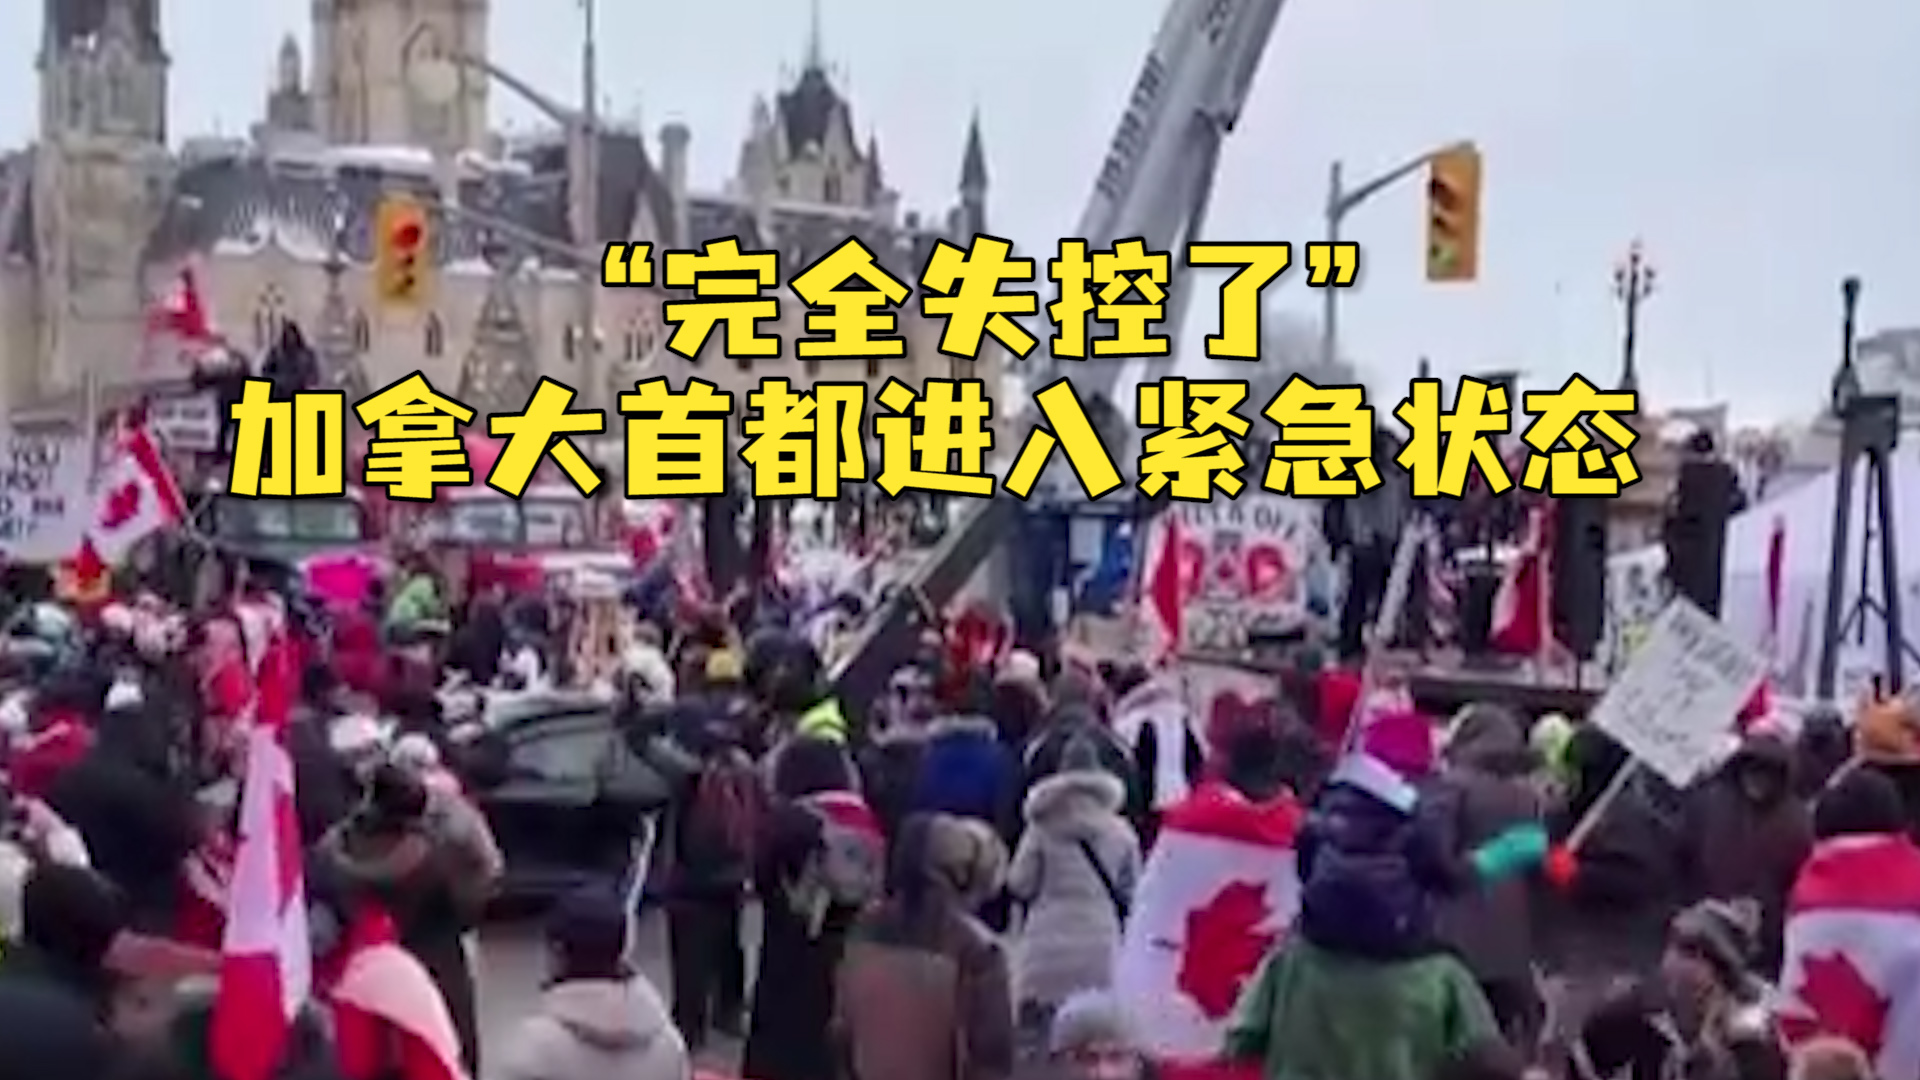 加拿大抗议浪潮外溢 全球多地爆发反新冠防疫活动-搜狐大视野-搜狐新闻